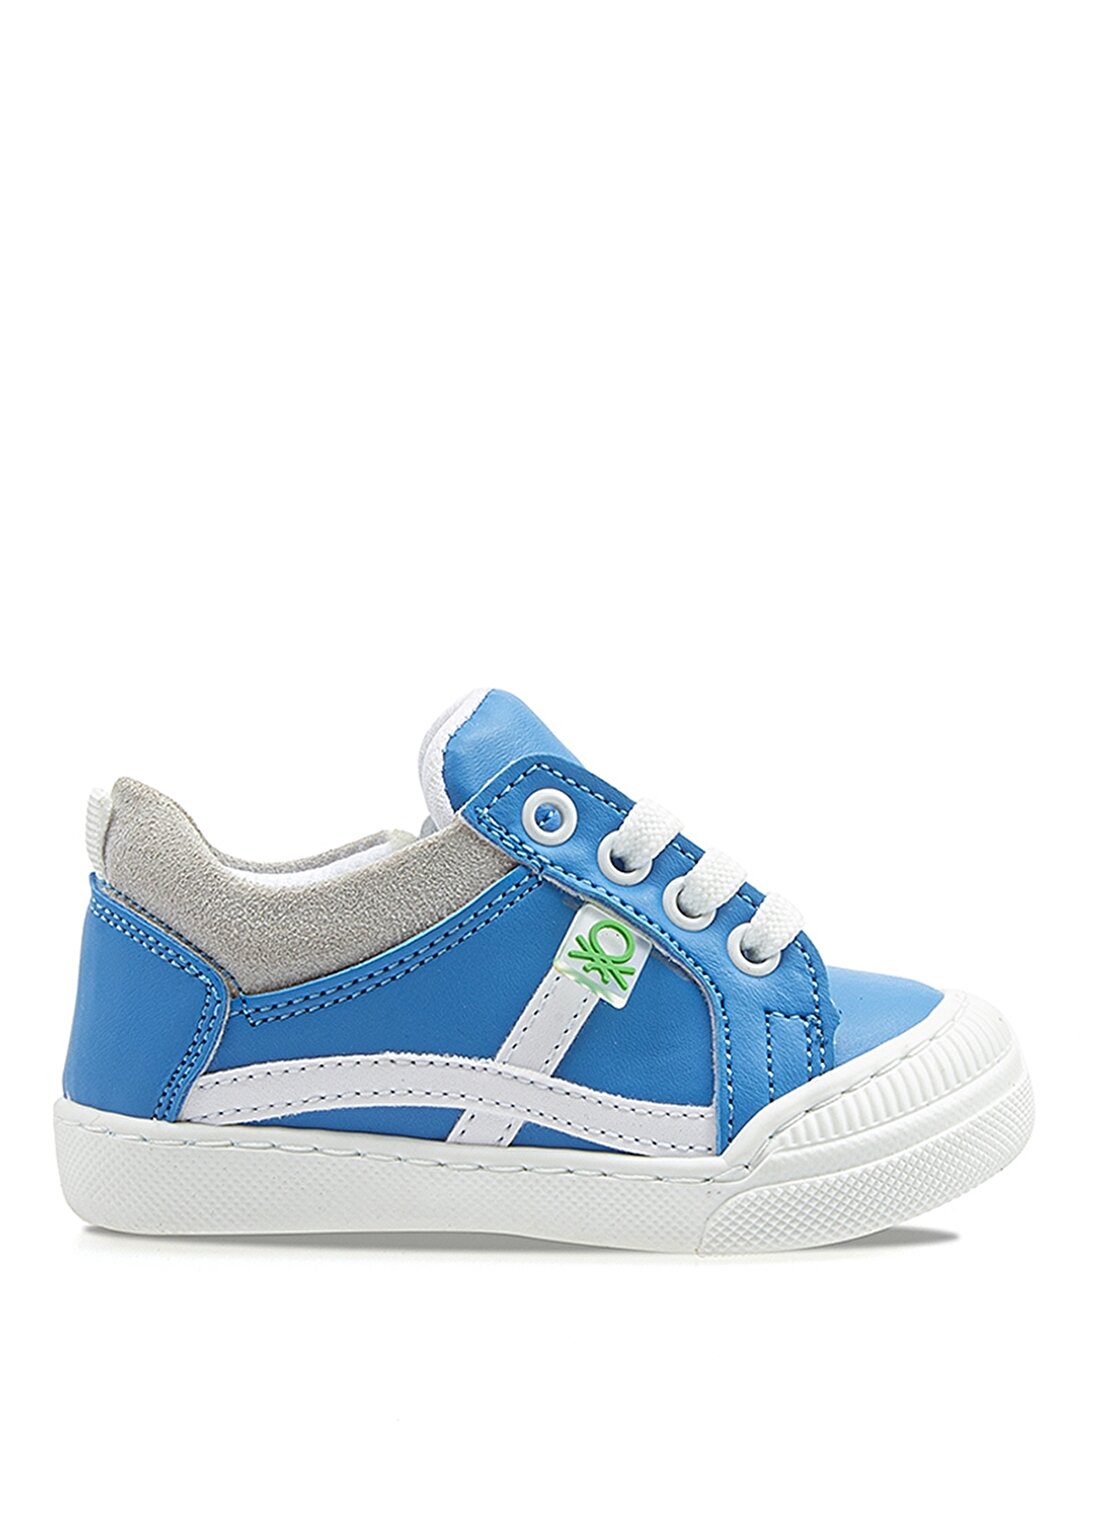 Benetton BN-1016 Düz Mavi Erkek Çocuk Yürüyüş Ayakkabısı